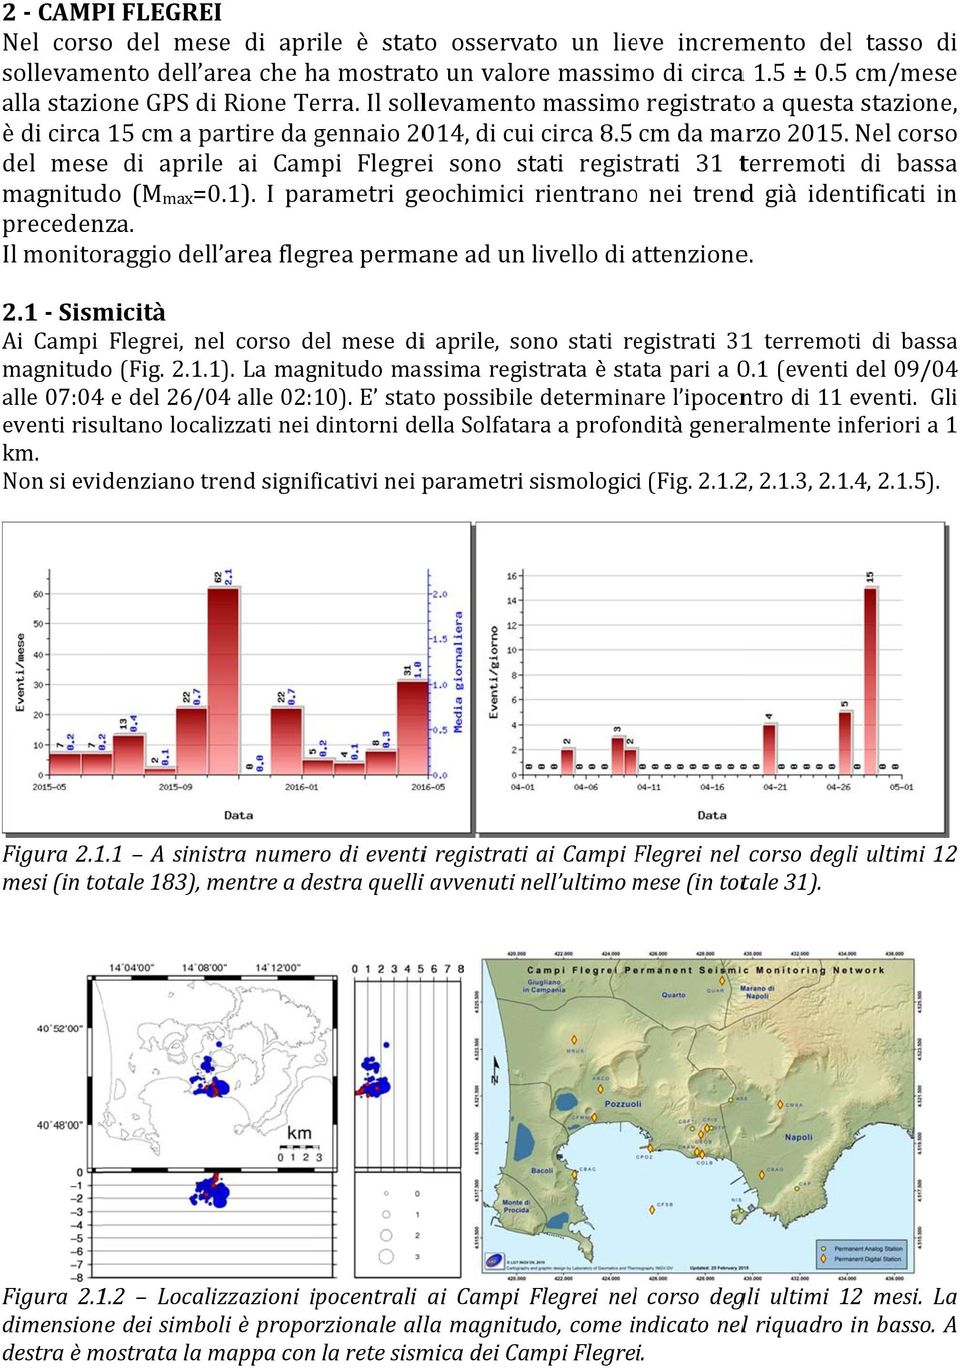 Nel corsoo del mesee di aprile ai Campi Flegrei sono stati registrati 31 terremoti di bassaa magnitudo (Mmax=0.1). I parametri geochimici rientranoo nei trendd già identificati in precedenza.